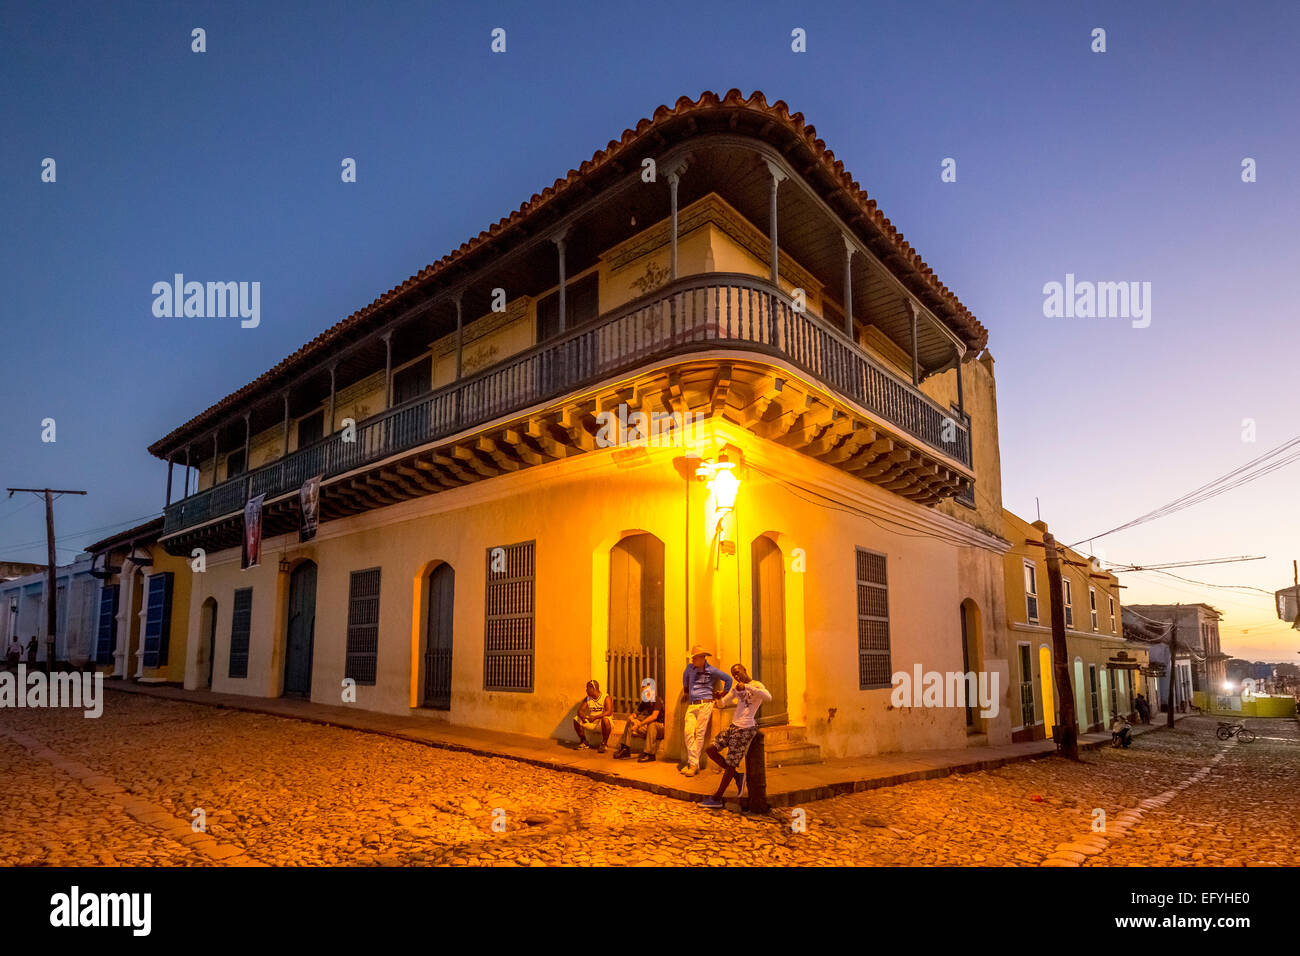 Casa residencial con adolescentes cubanos en el exterior, al anochecer, el centro histórico, Trinidad, Provincia de Sancti Spíritus, Cuba Foto de stock